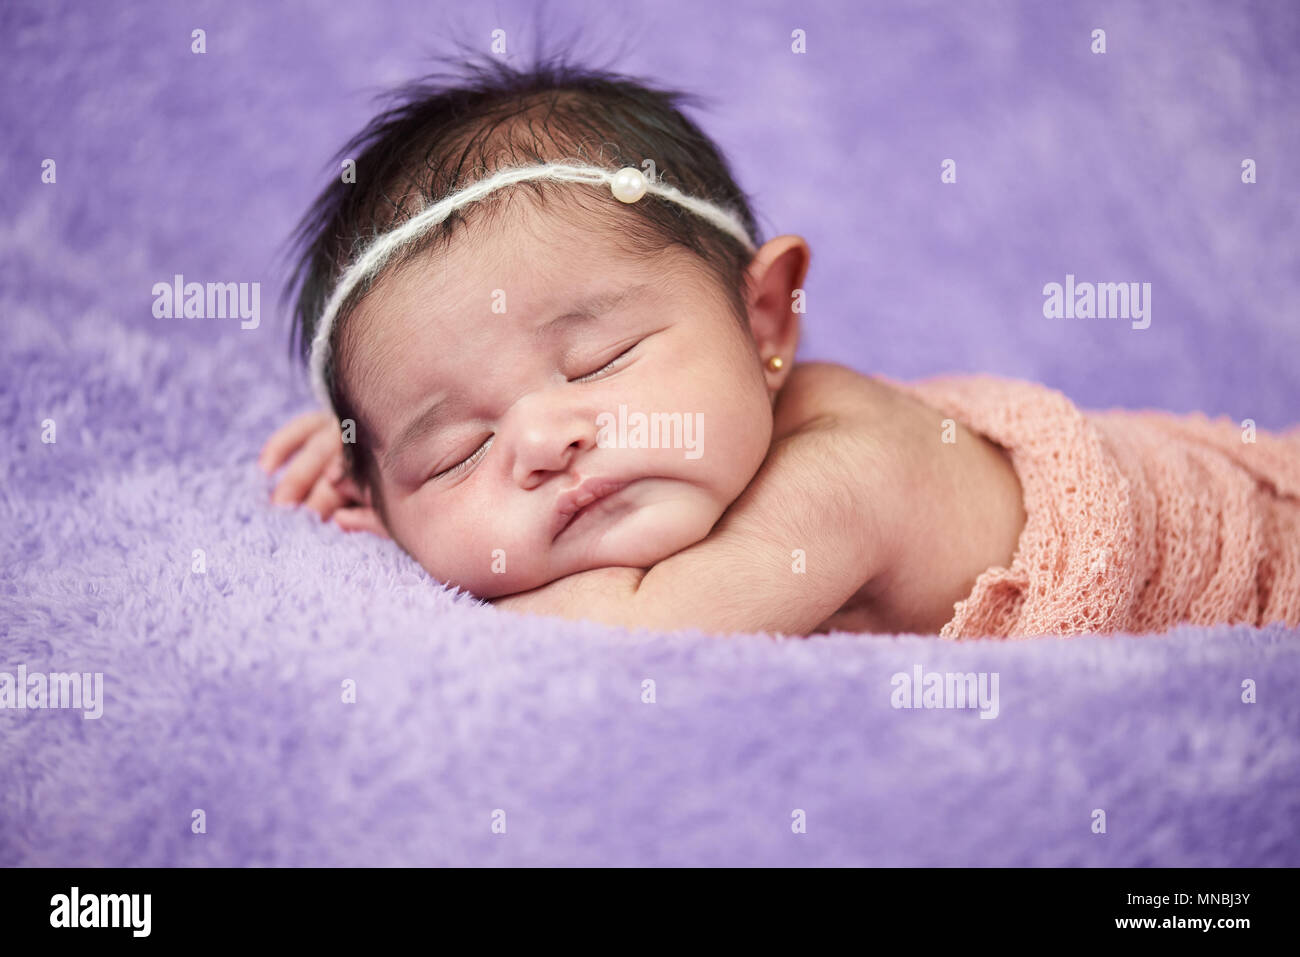 Asiatische neugeborenes Baby close-up Portrait auf unscharfen Hintergrund Stockfoto